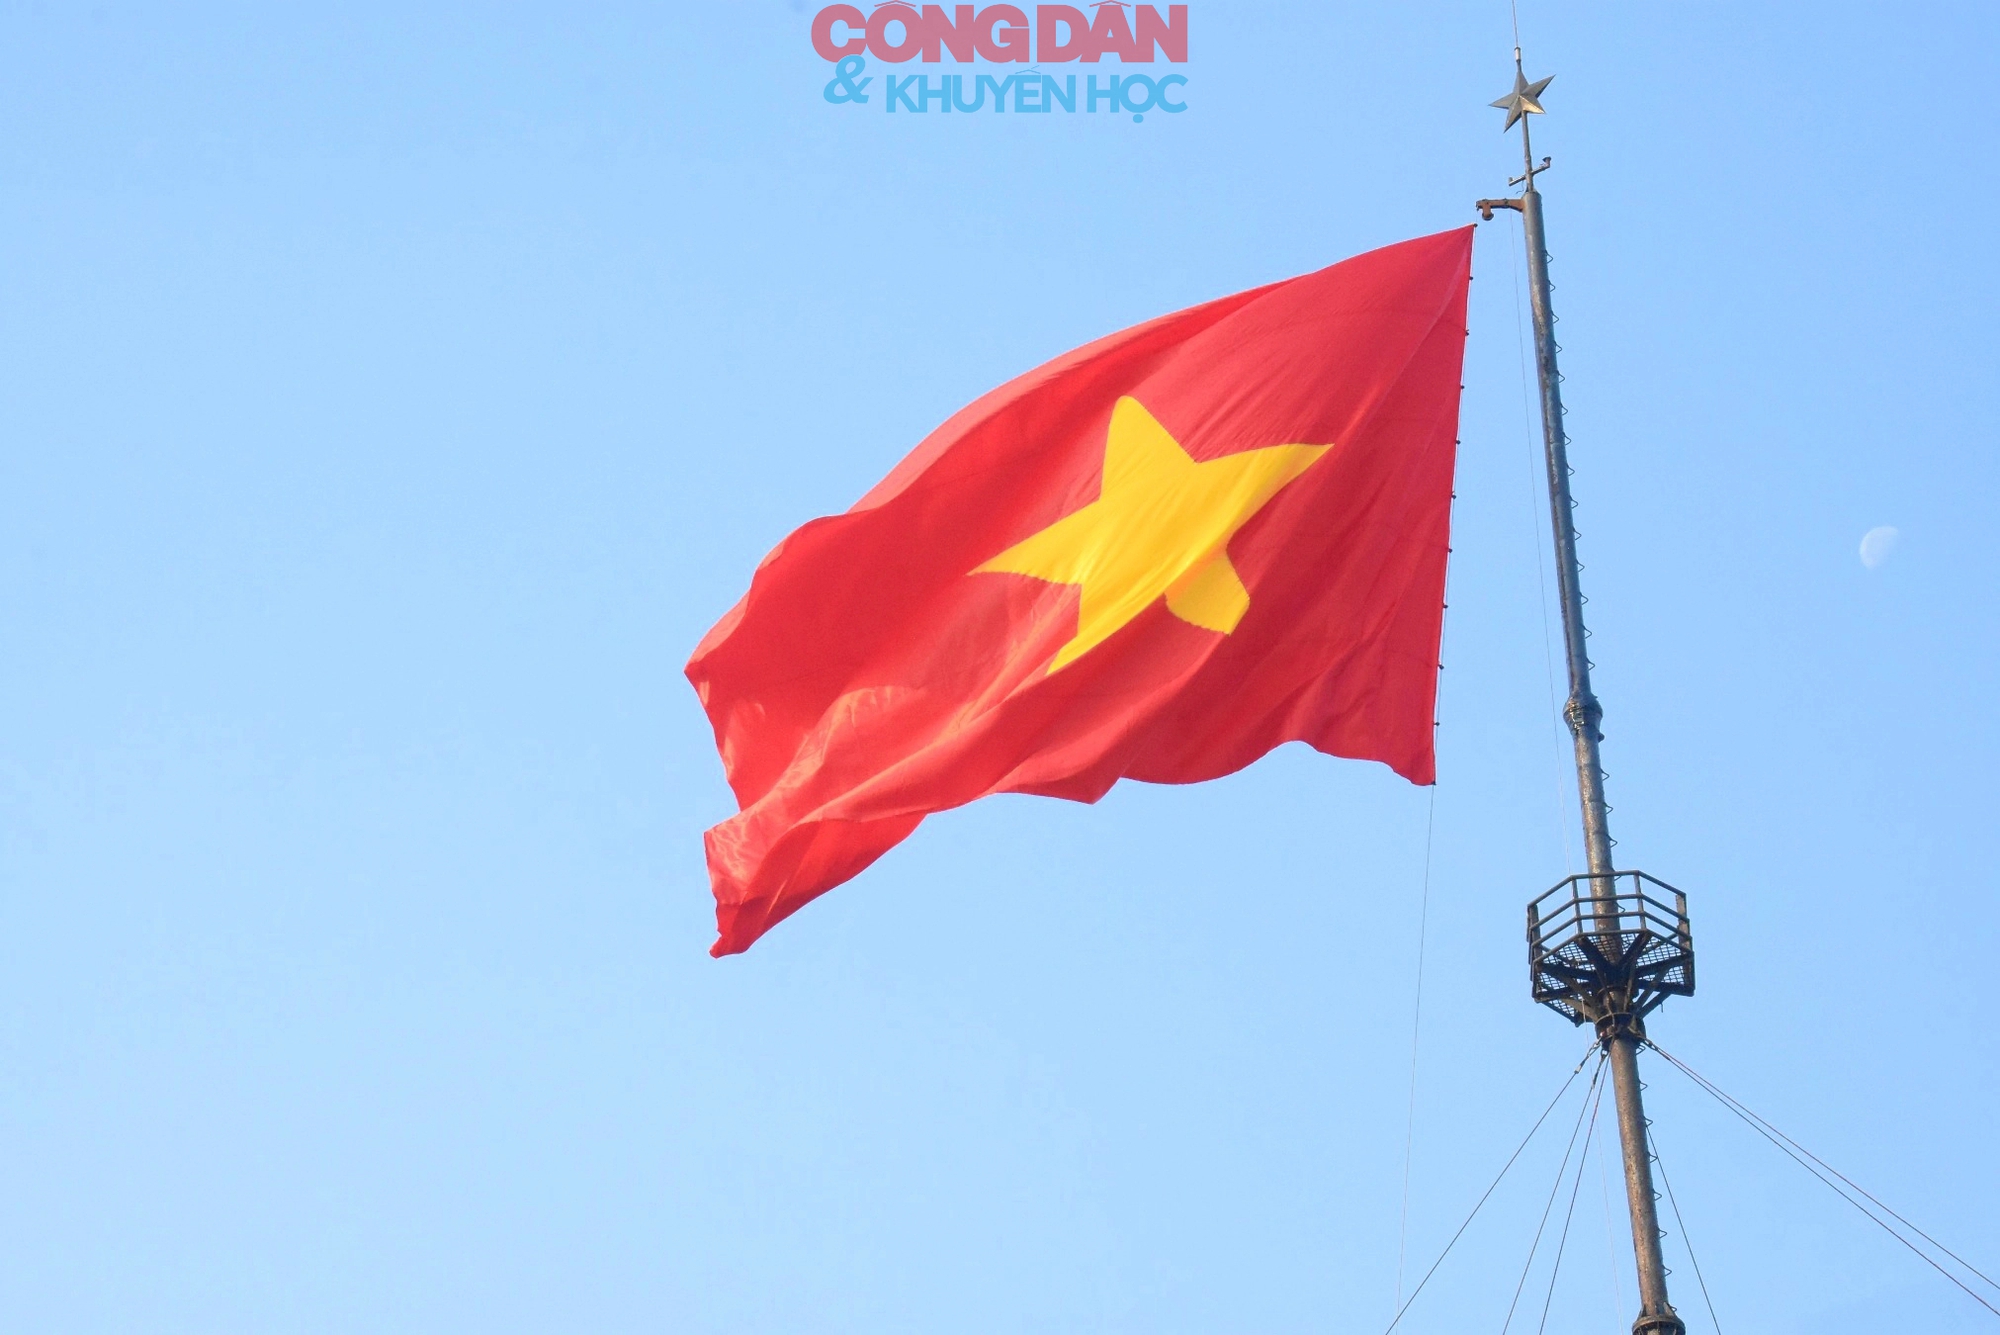 Tự hào màu cờ đỏ thắm bay trên cầu Hiền Lương- Ảnh 2.